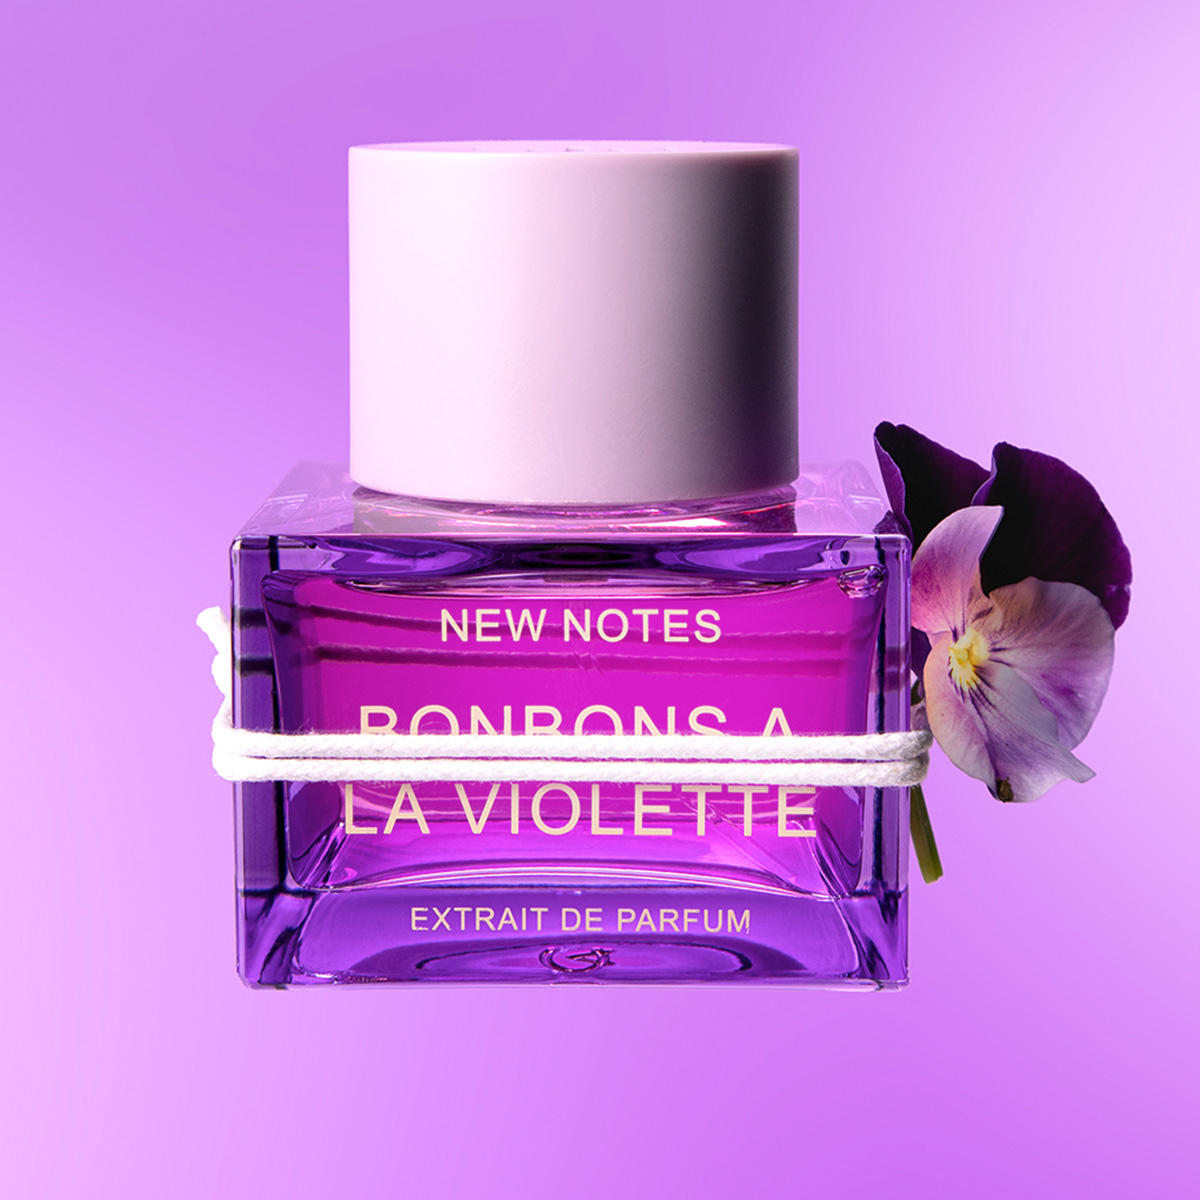 New Notes Bonbons A La Violette Extrait de Parfum 50 ml - 7